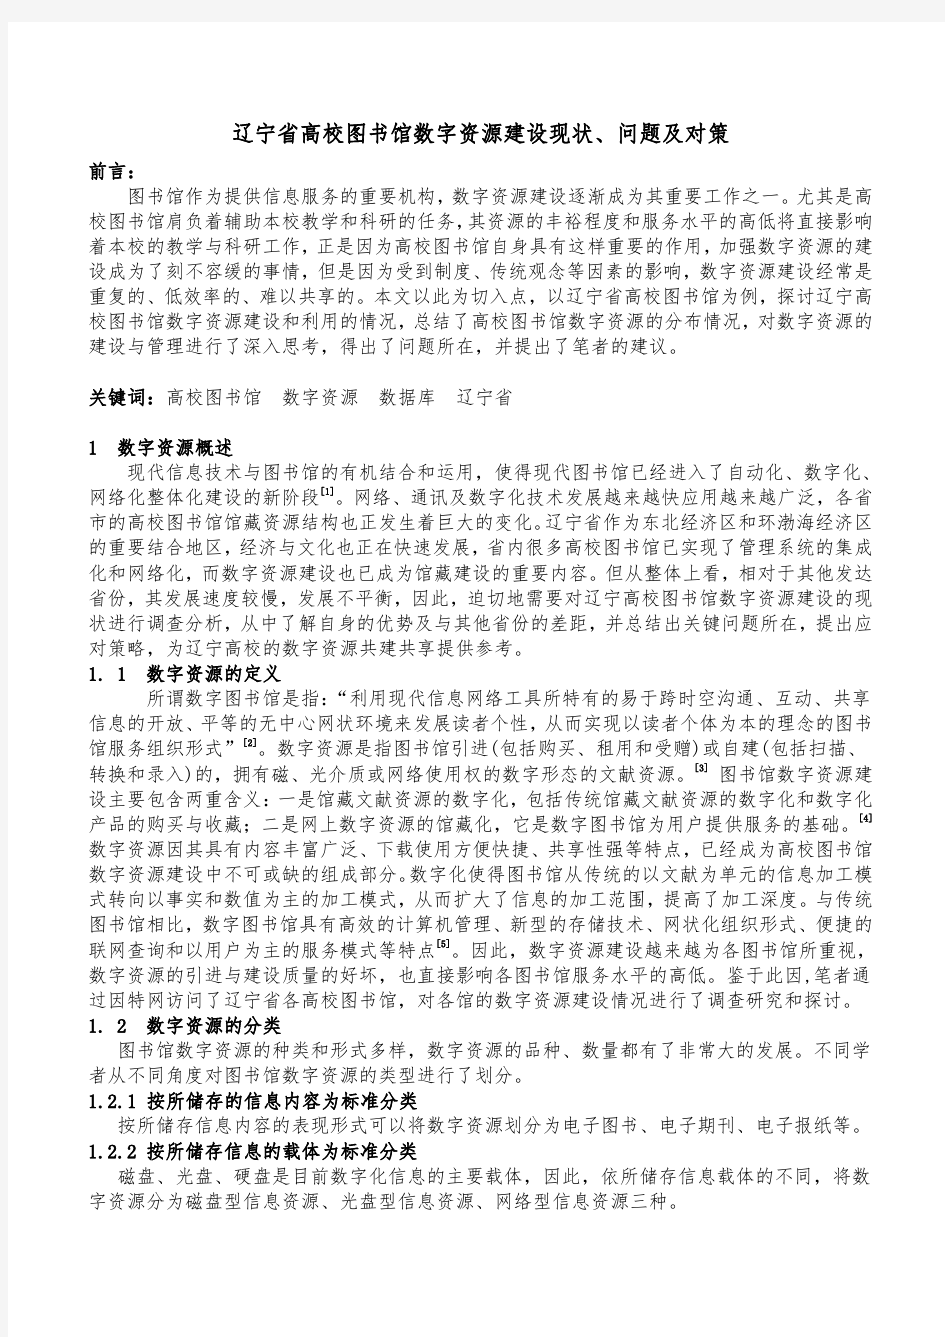 辽宁省高校图书馆数字资源建设现状、问题及对策